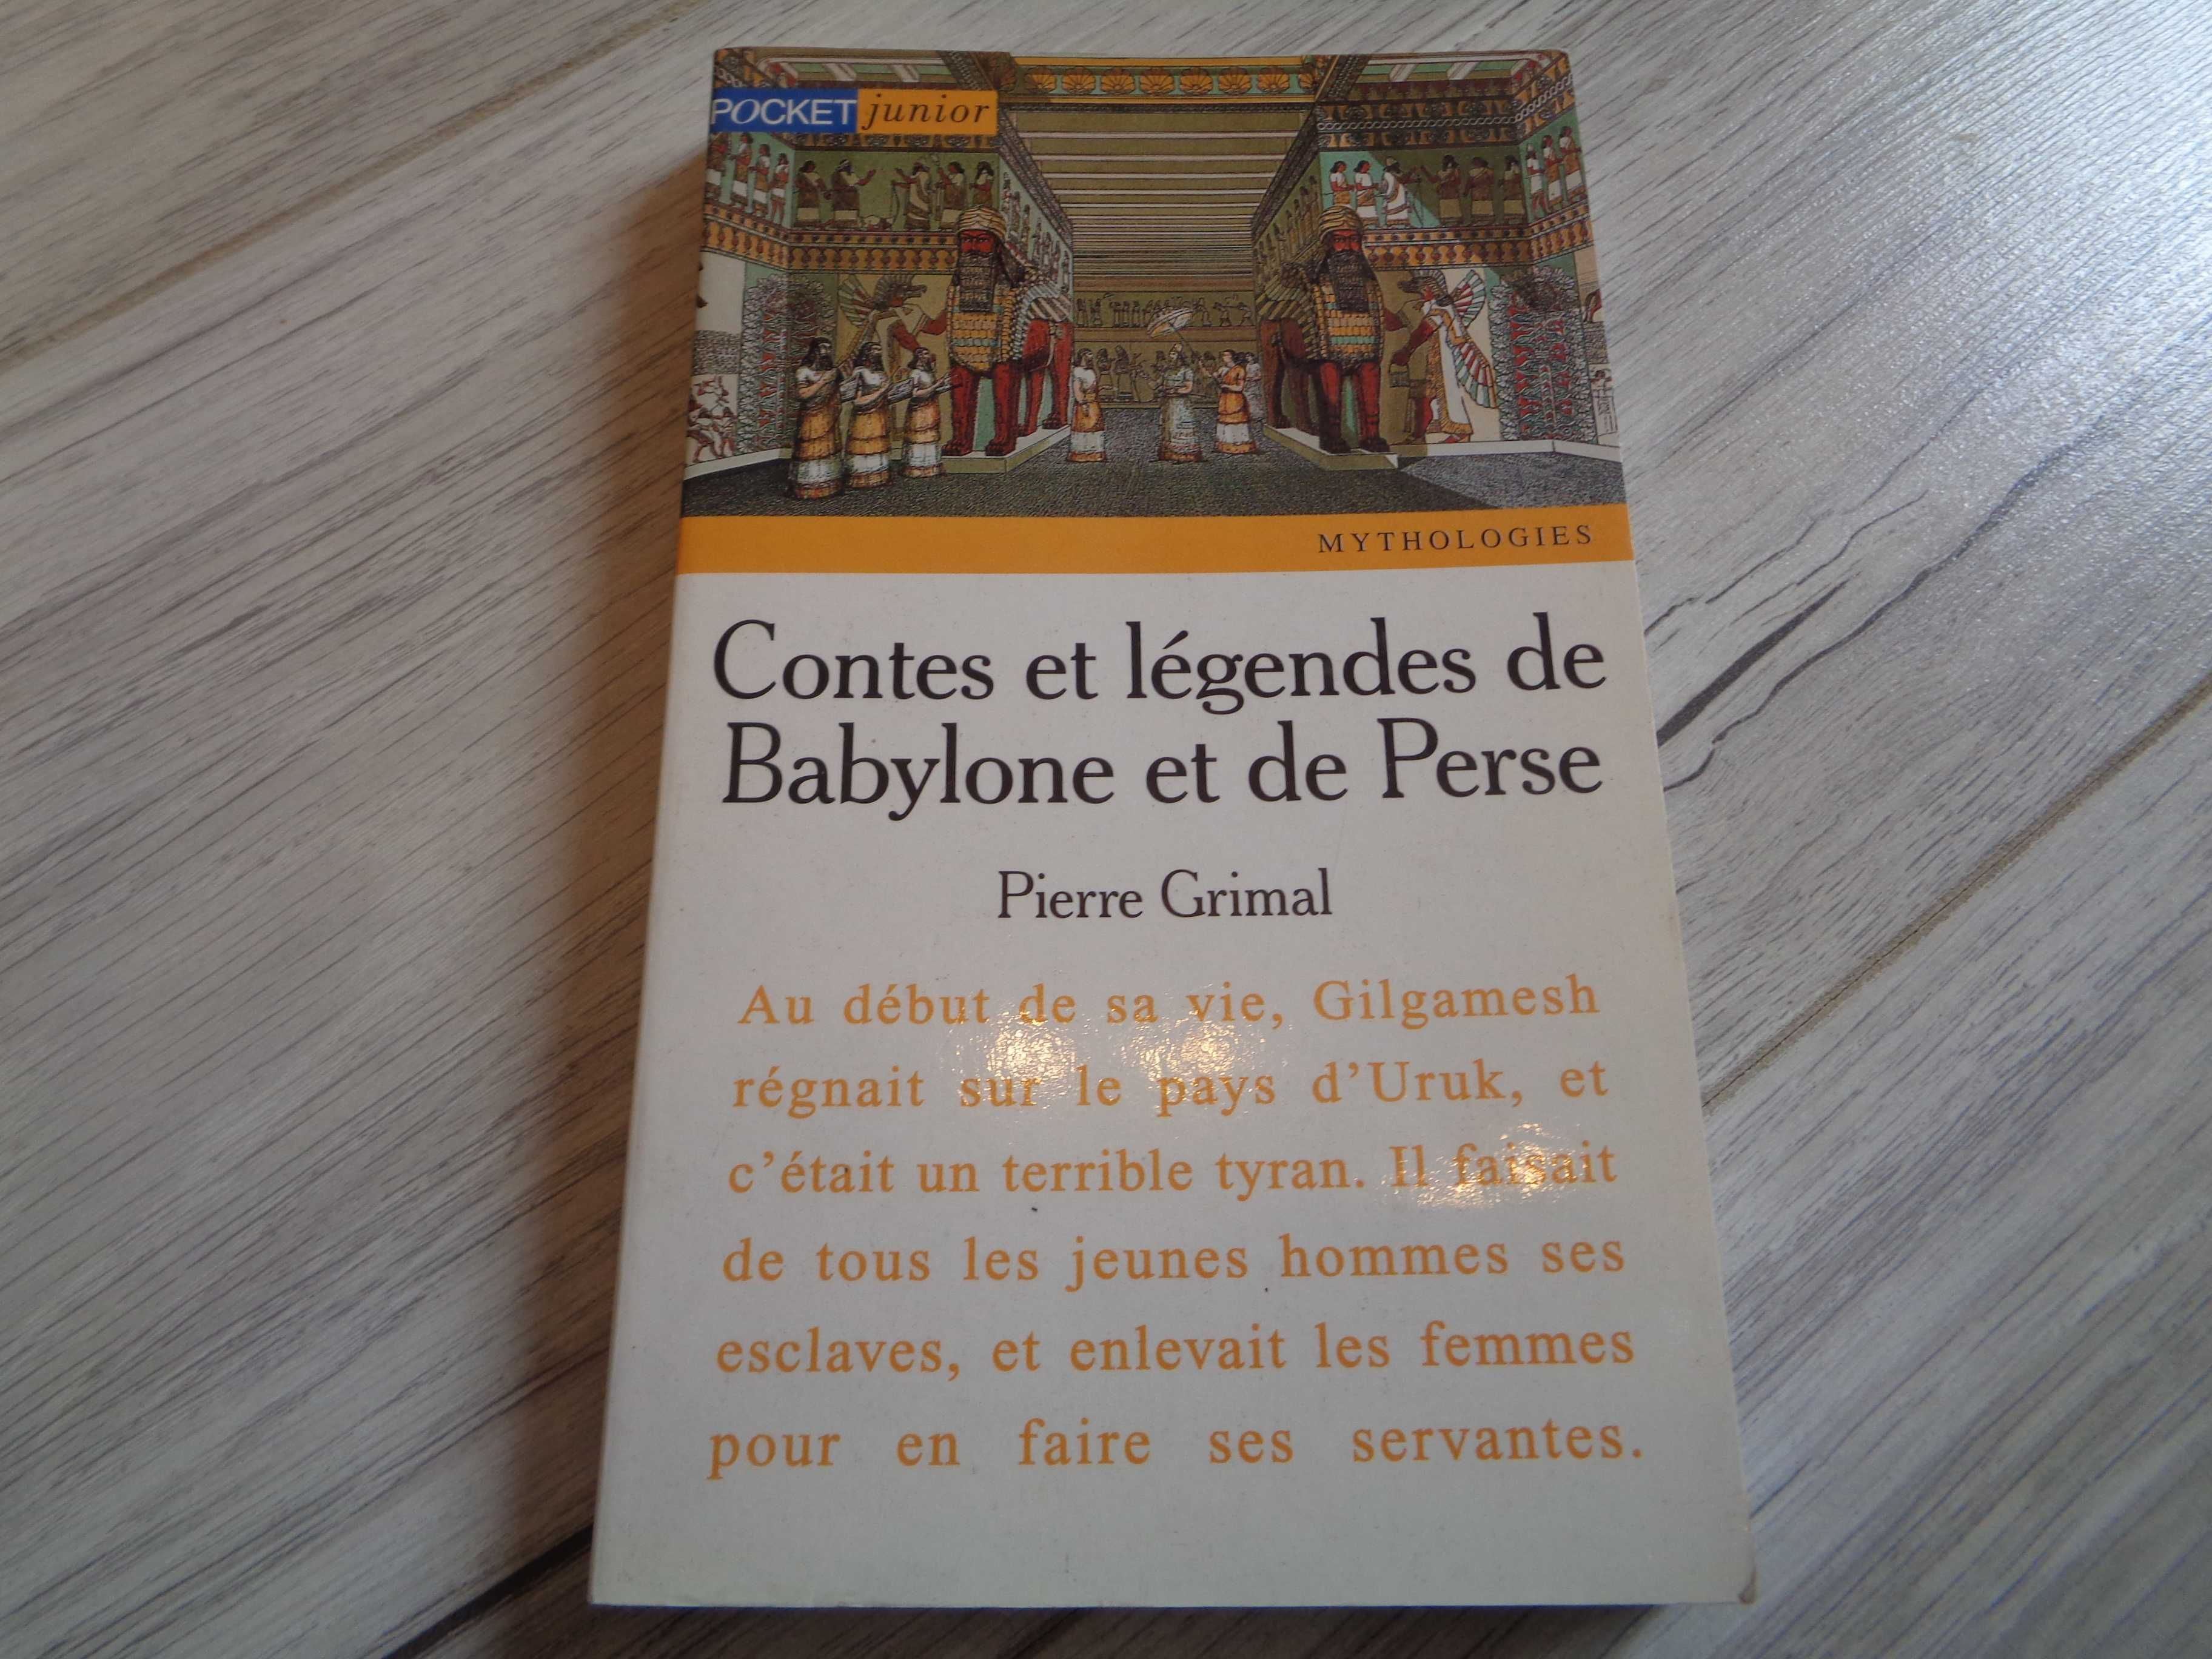 Opowieści legendy Babilon / Contes et legendes de Babylone et de Perse